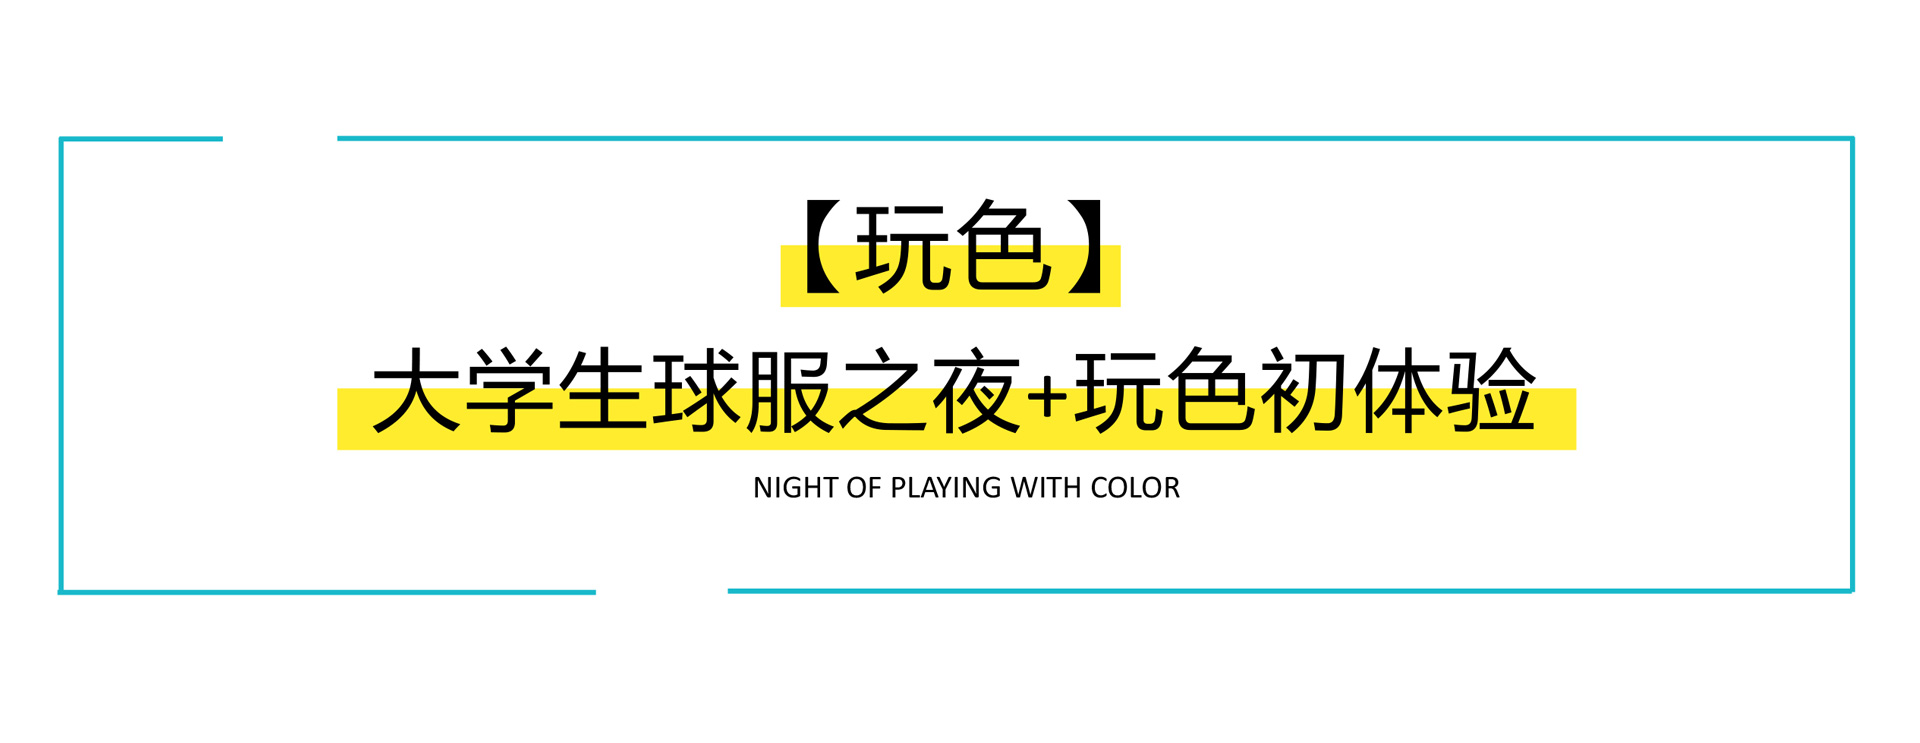 【玩色】大学生球服之夜+玩色初体验 方案下载